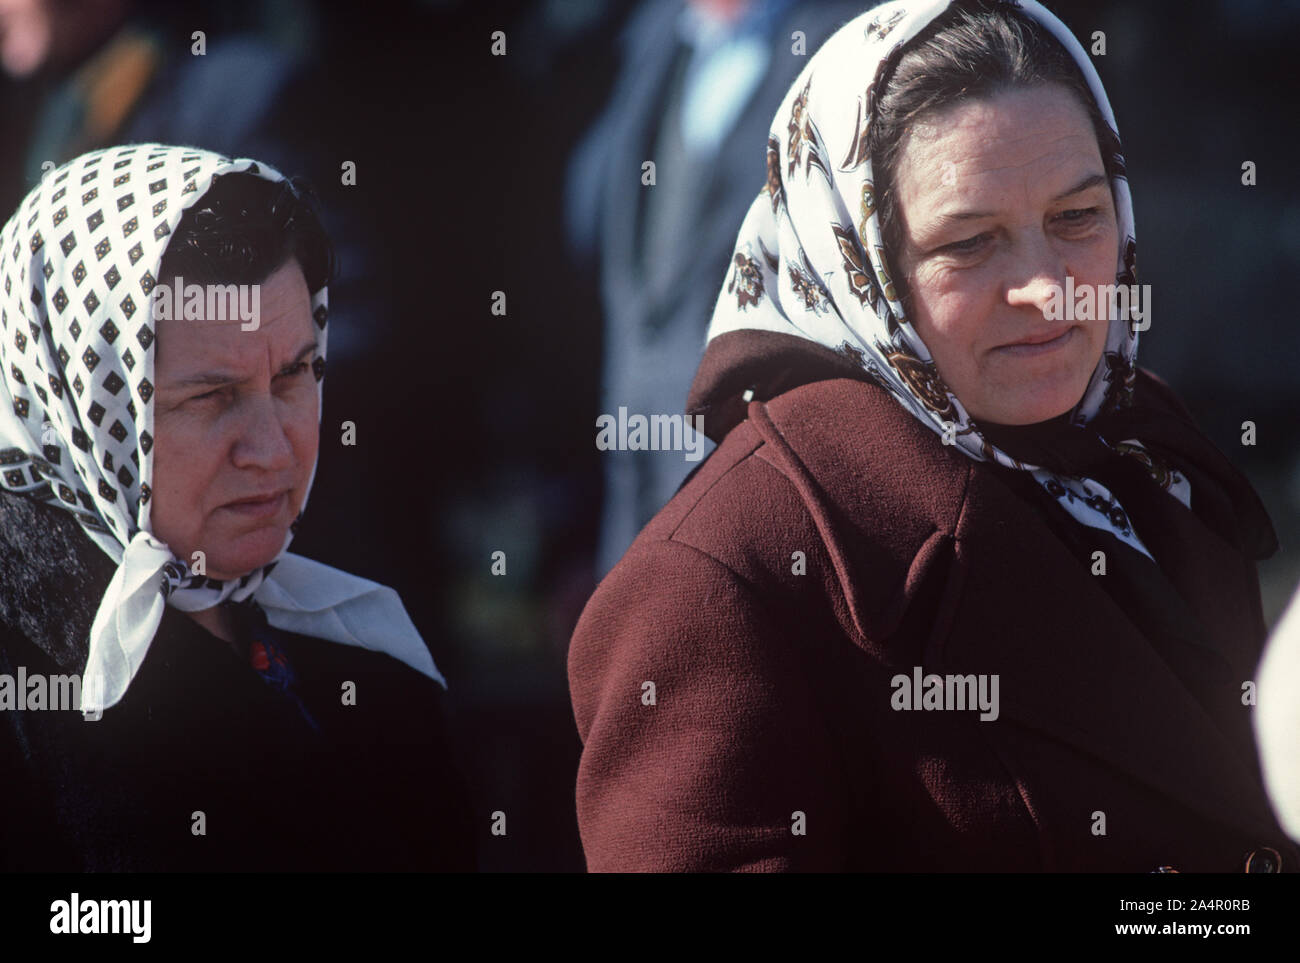 Muslim women with headscarves in Sarajevo, former Yugoslavia Stock Photo